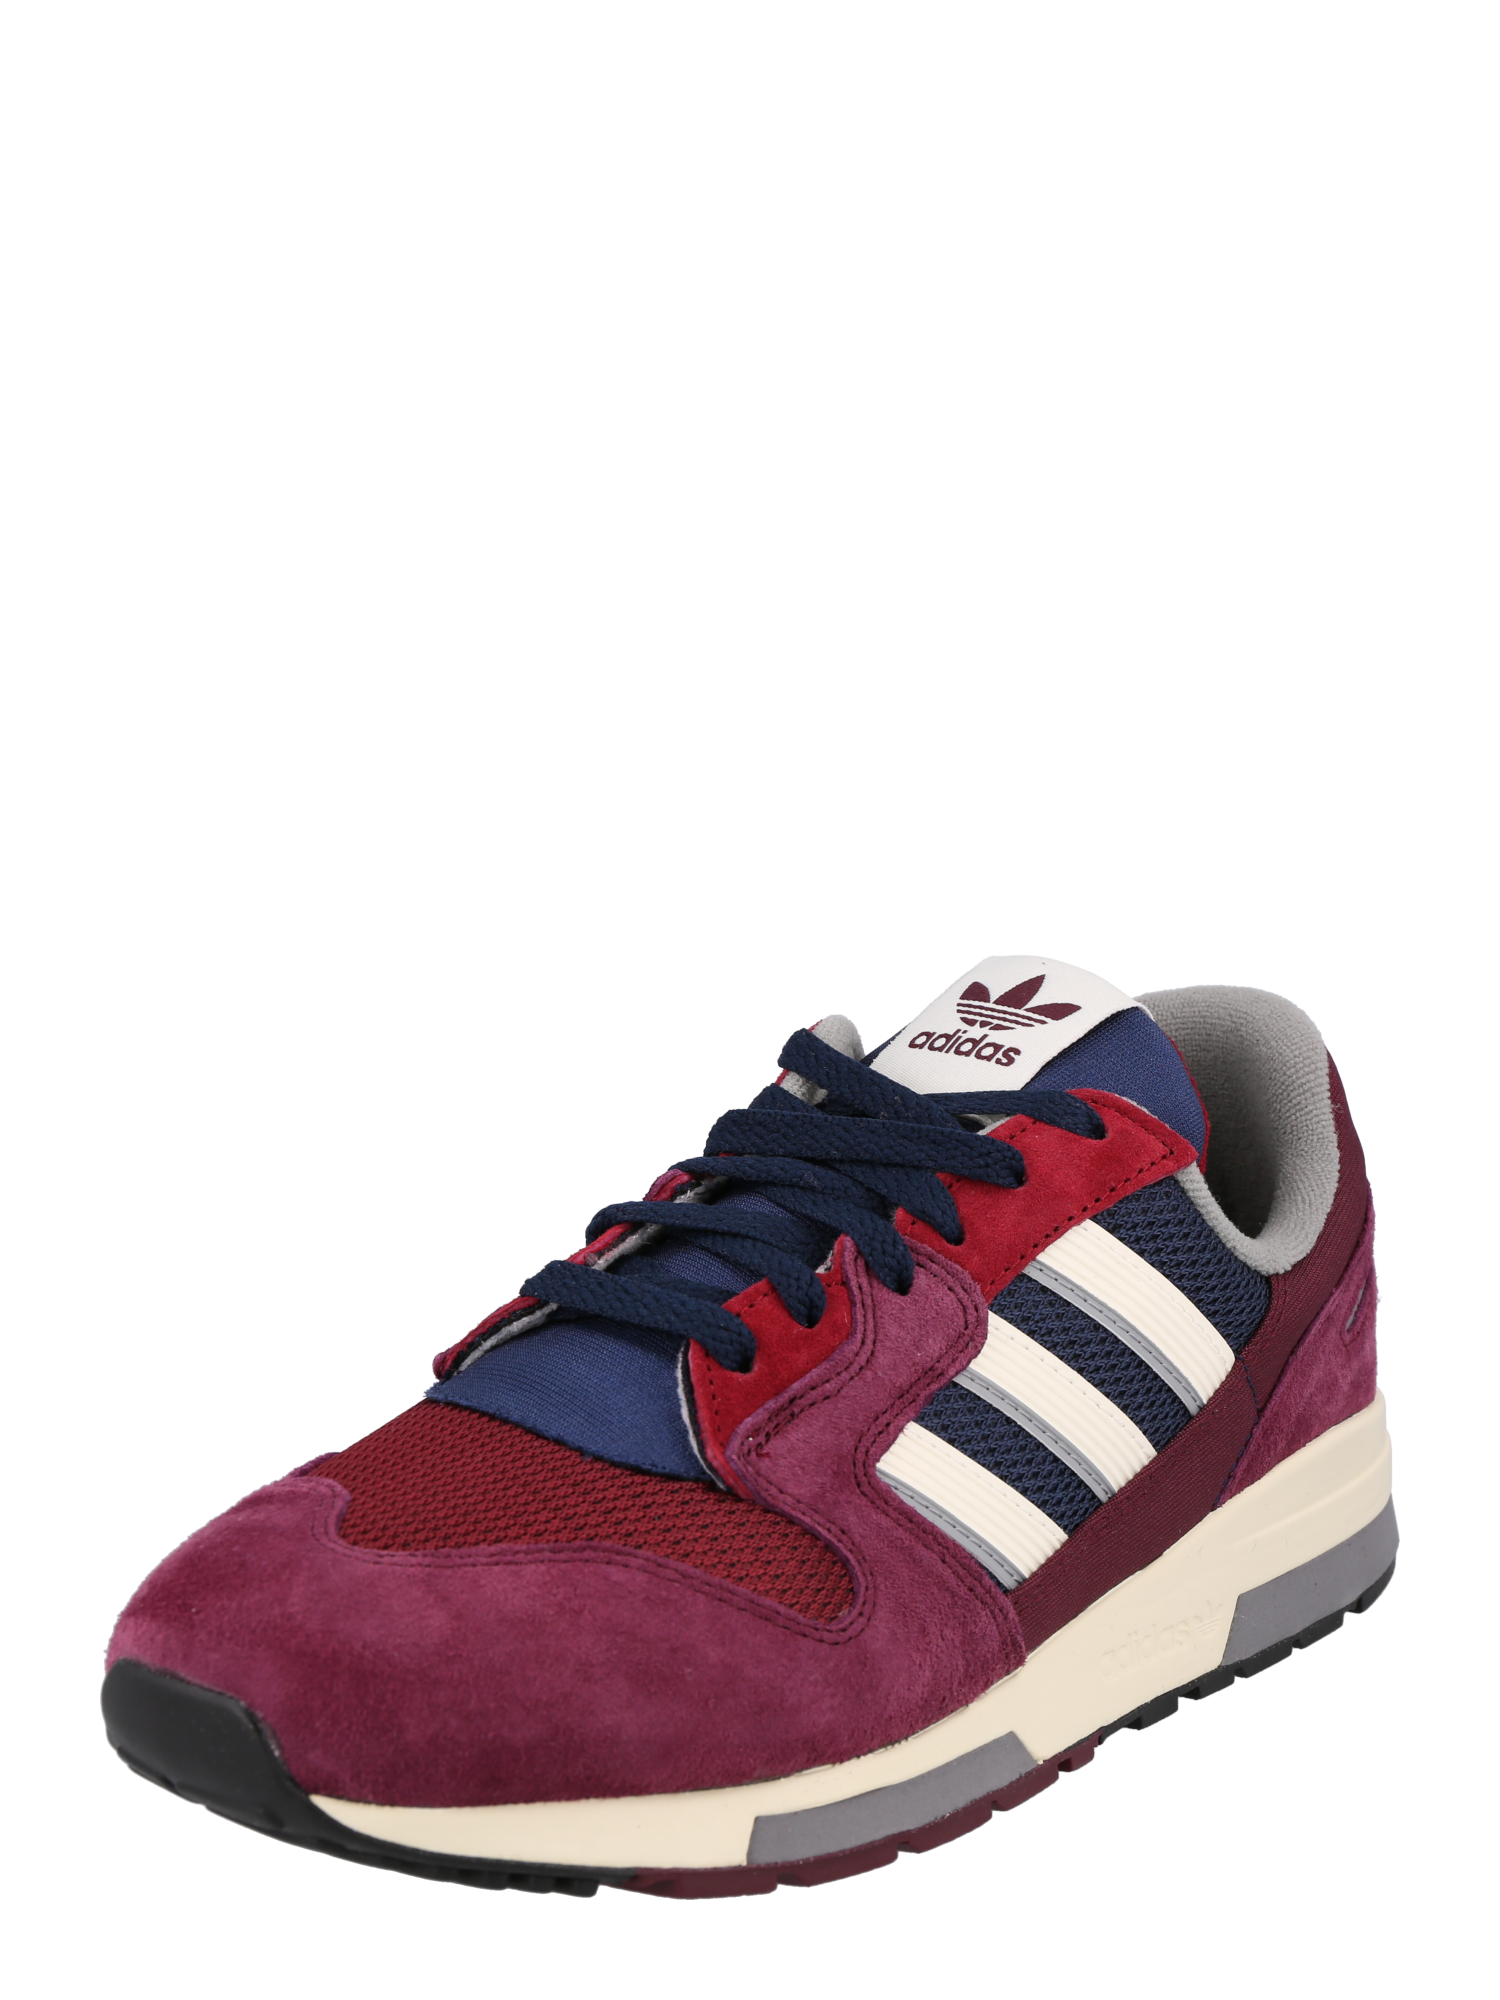 Trampki & sneakersy Buty ADIDAS ORIGINALS Trampki niskie ZX 420 w kolorze Czerwone Winom 